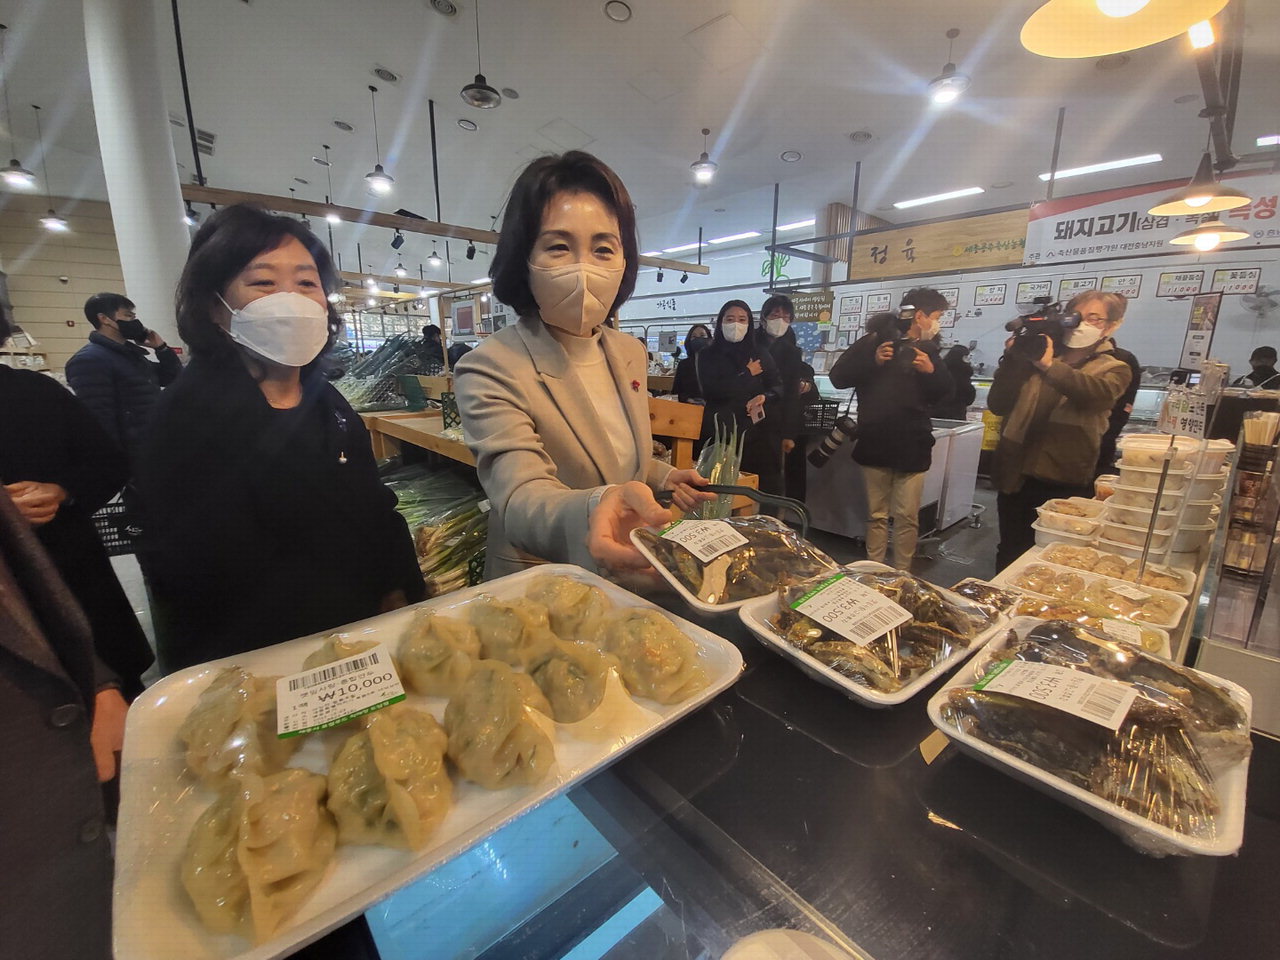 이재명 더불어민주당 대선 후보의 부인인 김혜경씨가 23일 세종시 싱싱장터를 찾아 로컬푸드 상품을 구매하고 있다. / 세종시 기자단